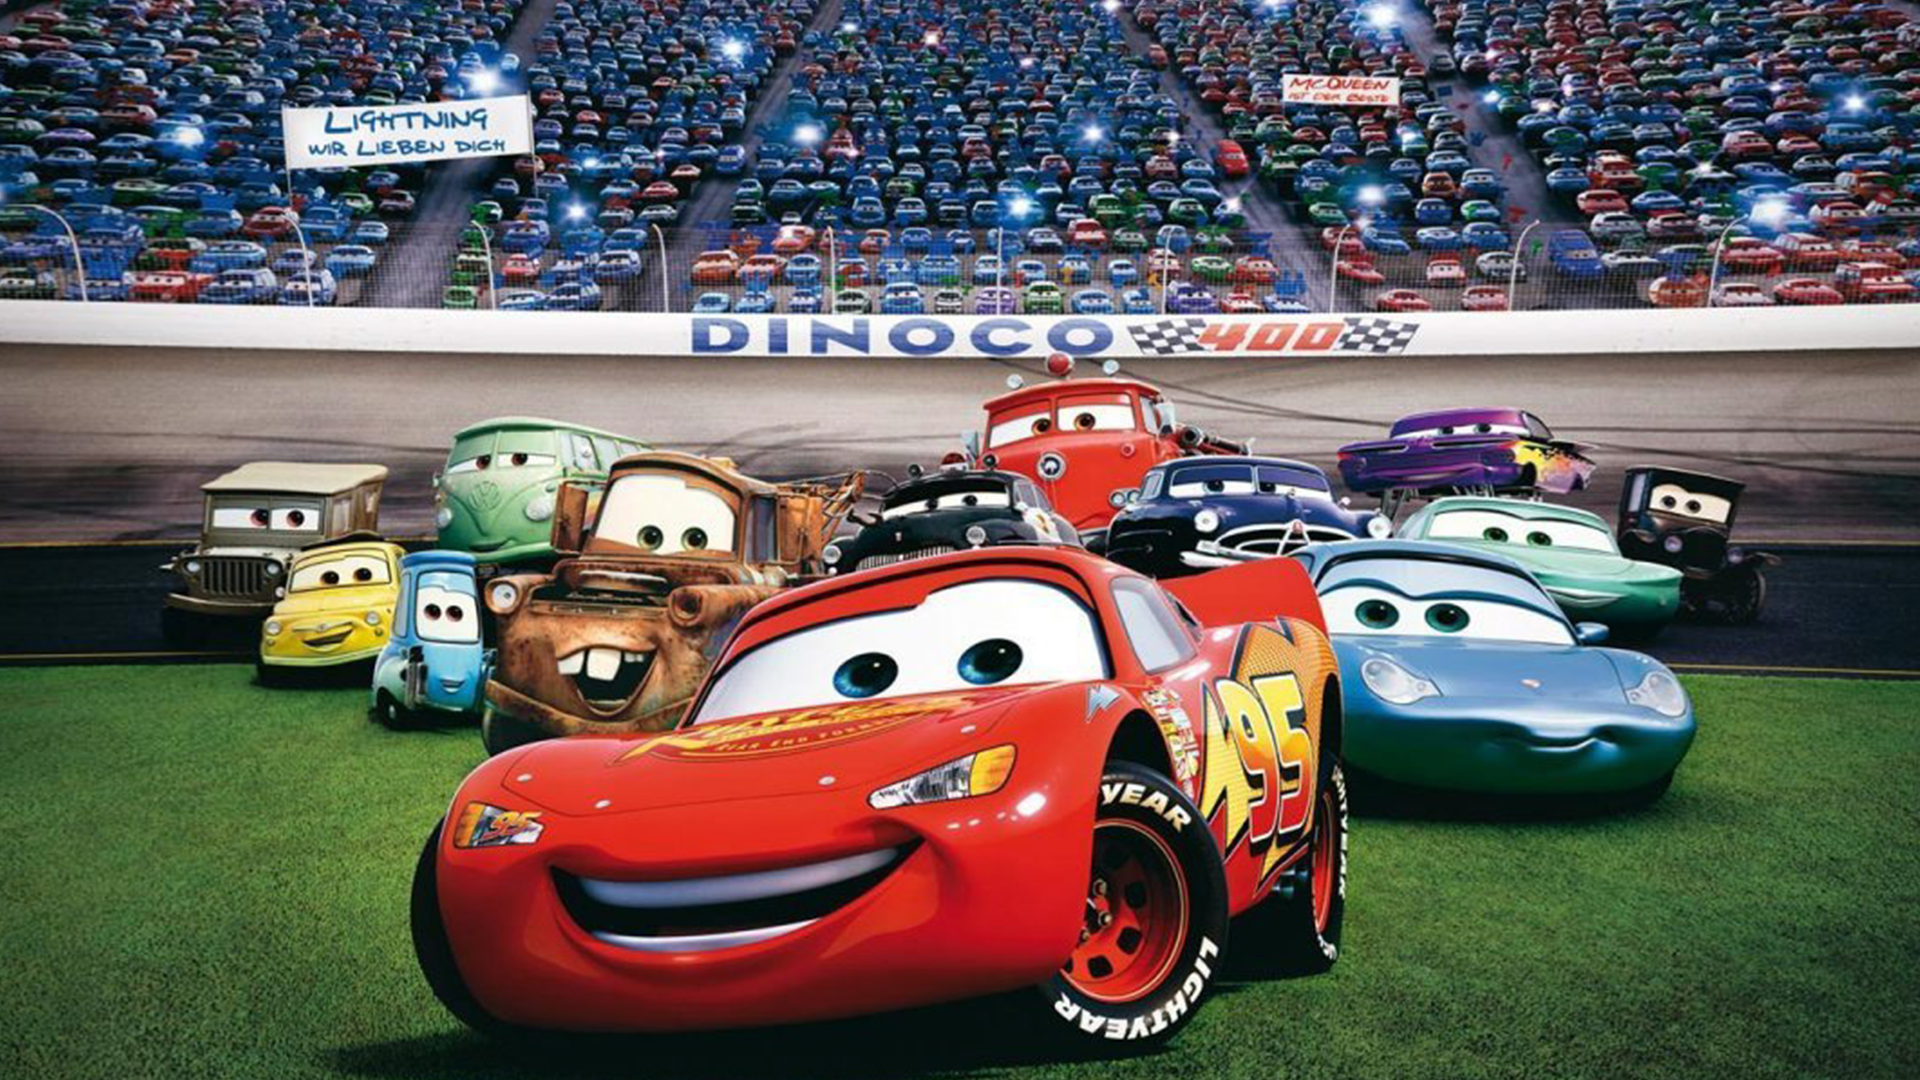 Cars in stadium